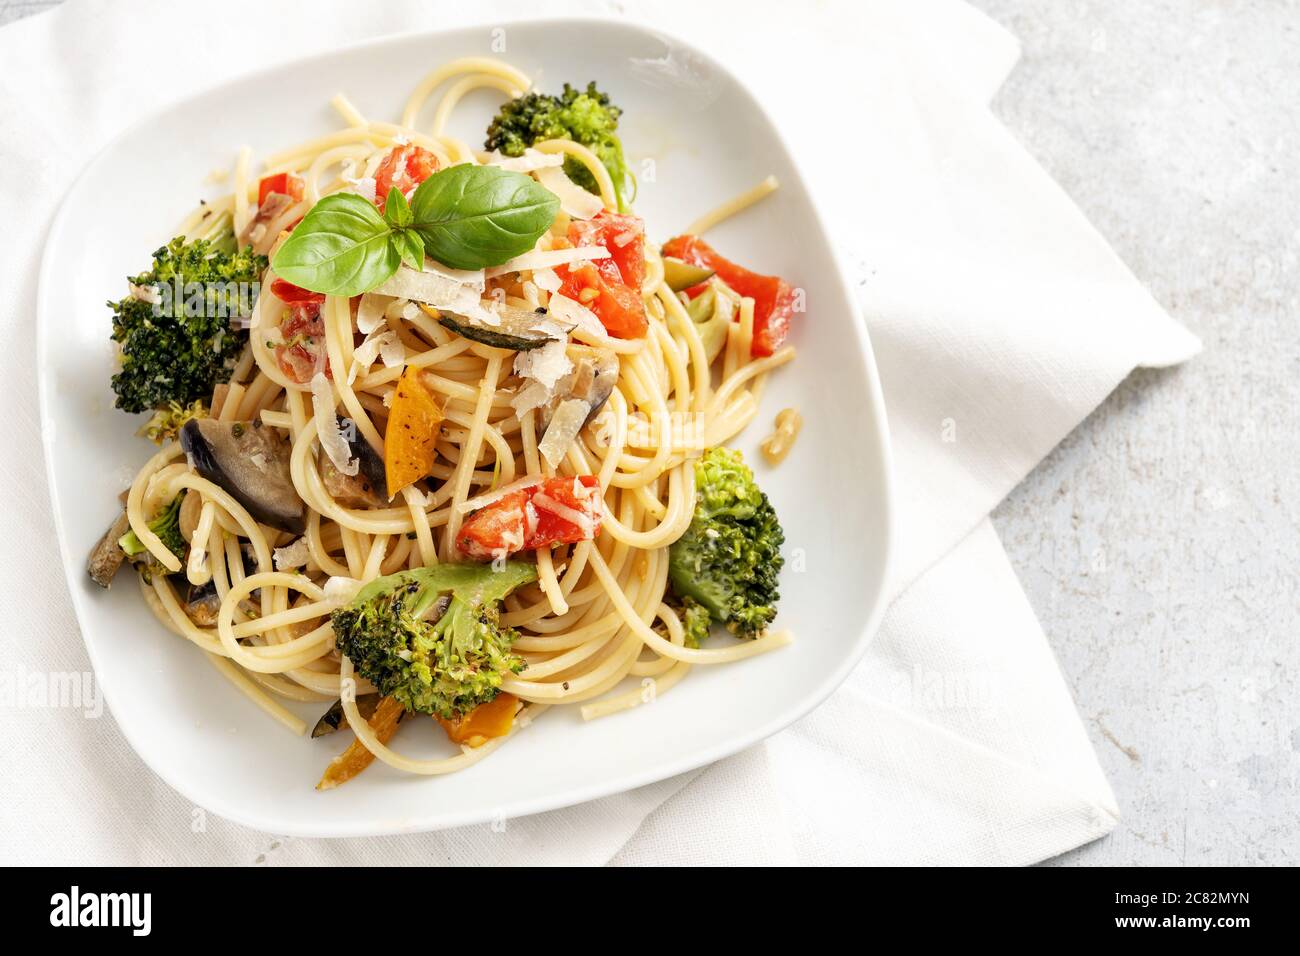 Vegetarische Spaghetti mit Brokkoli, Tomaten, Paprika und Auberginen, gesunde mediterrane Pasta-Mahlzeit auf weißem Teller und hellgrauem Hintergrund, Stockfoto